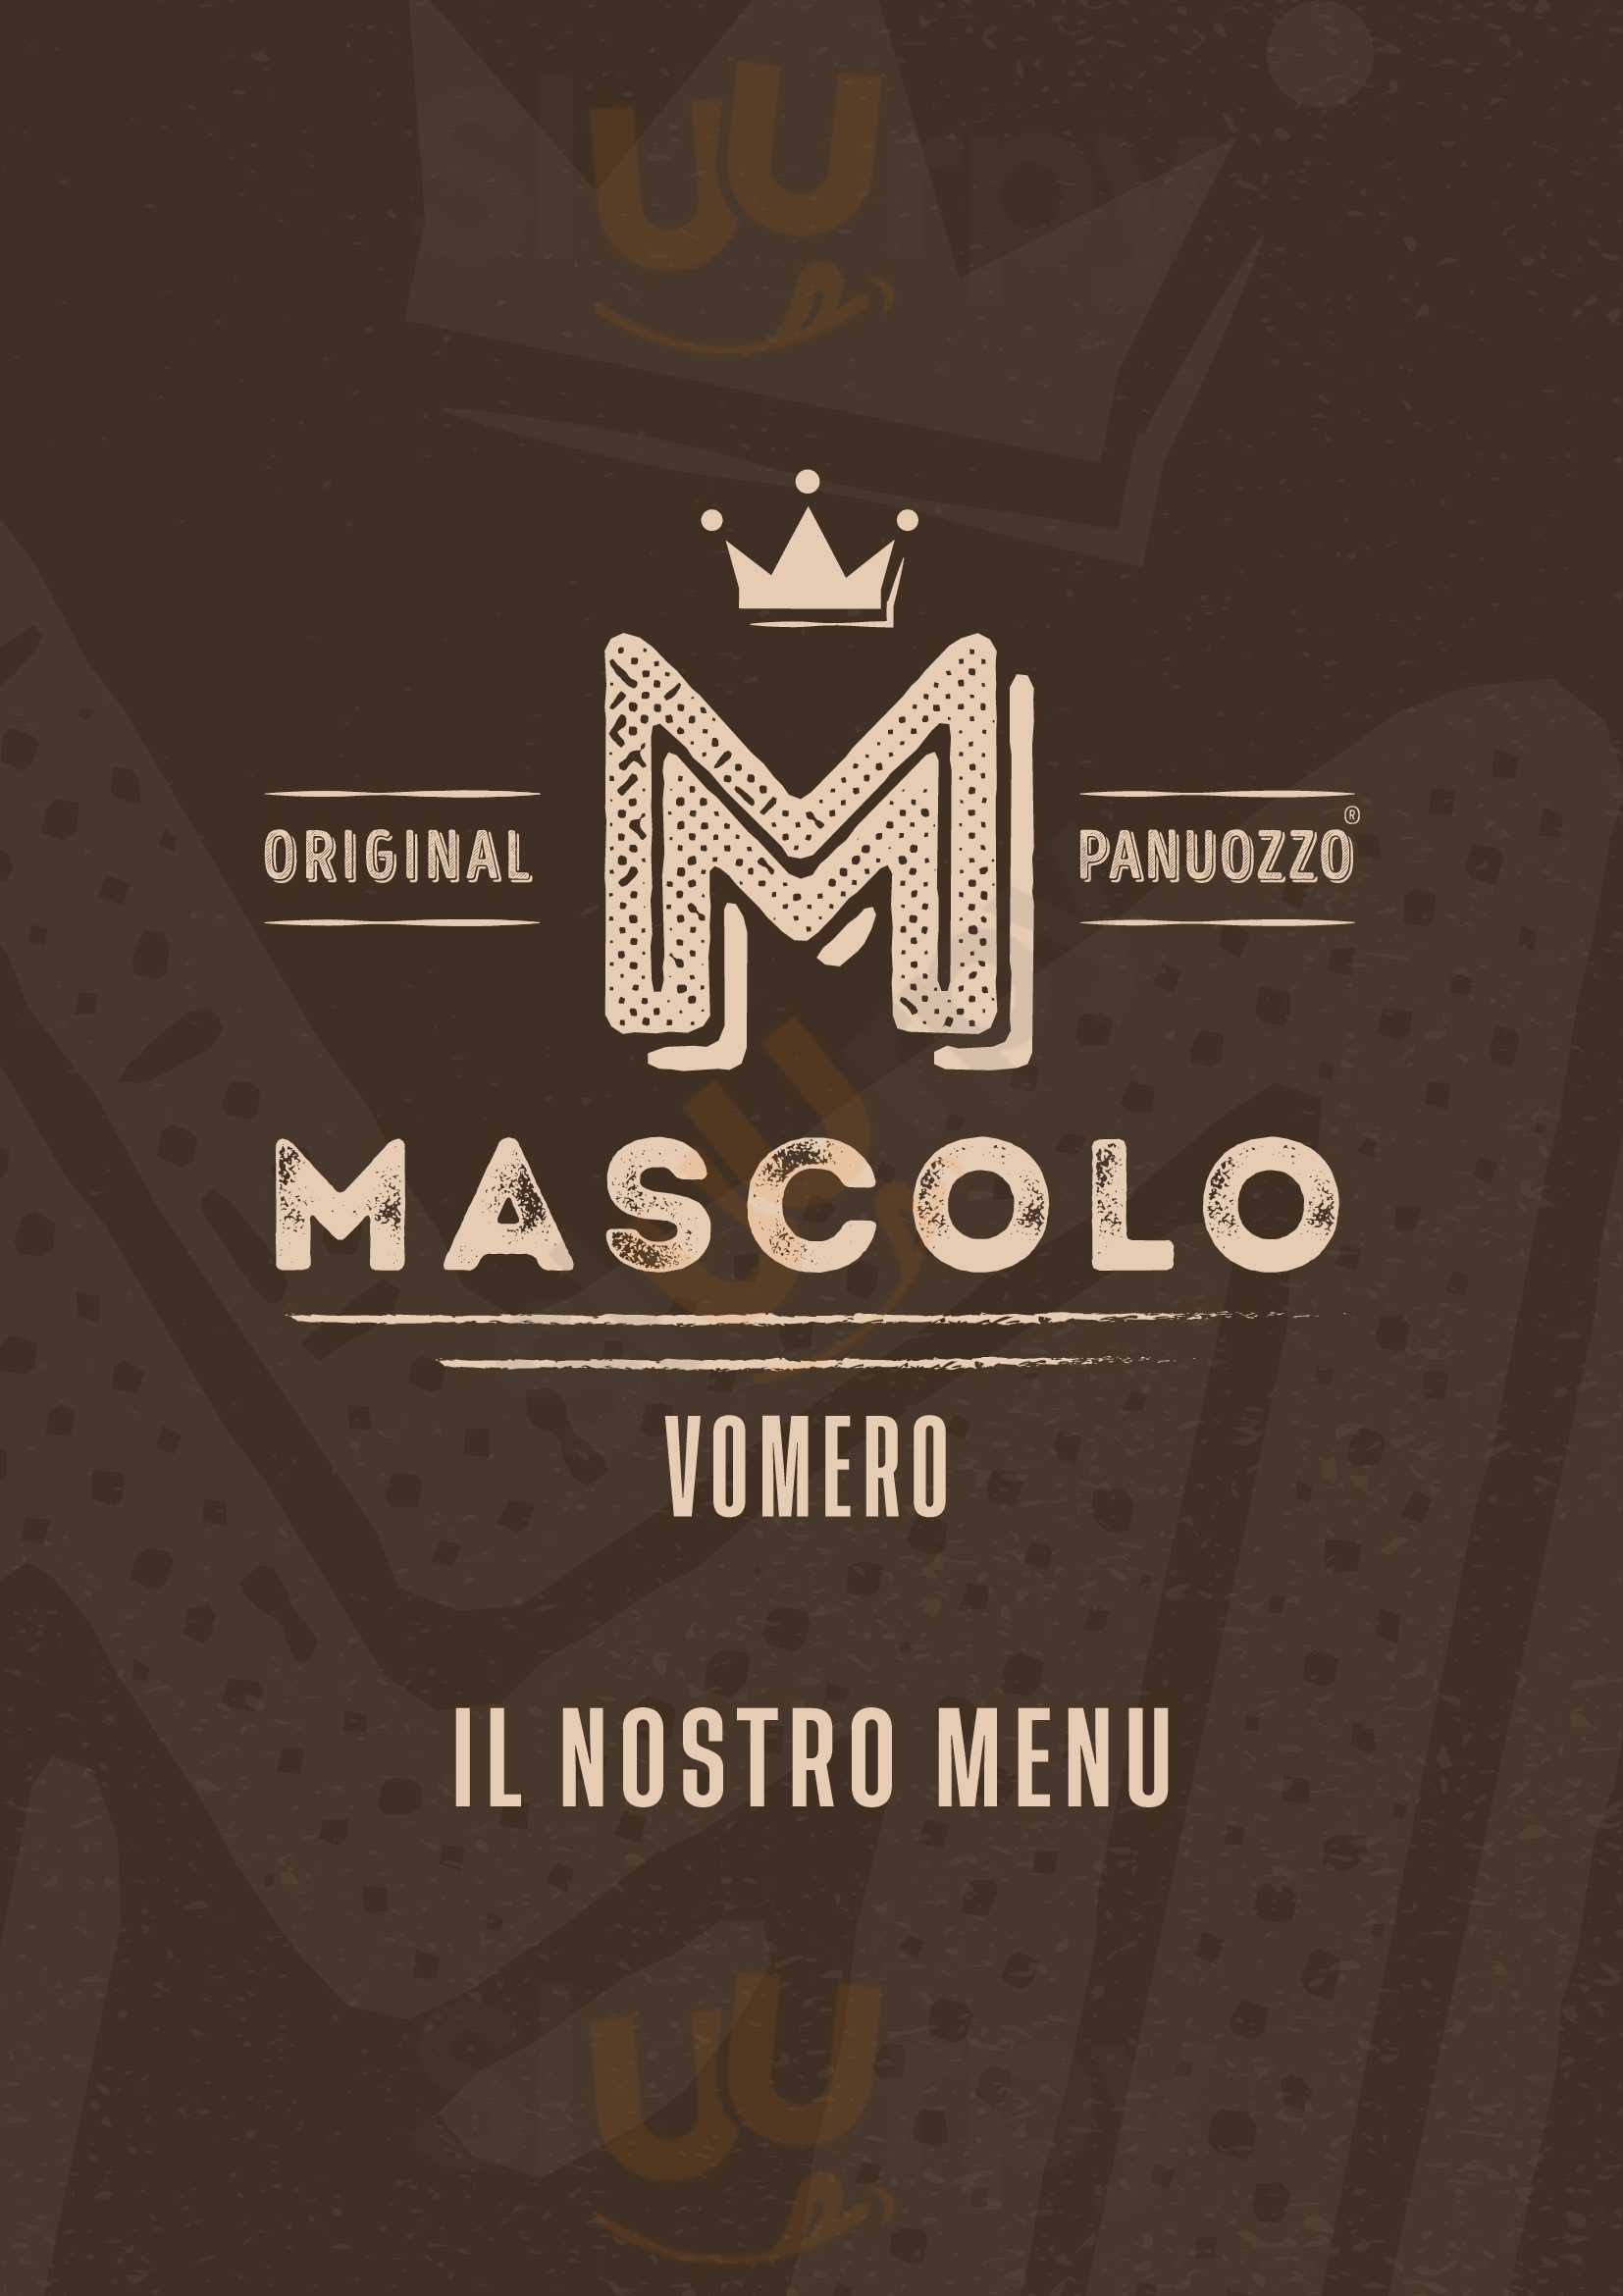 Mascolo Panuozzo Original Vomero Napoli menù 1 pagina